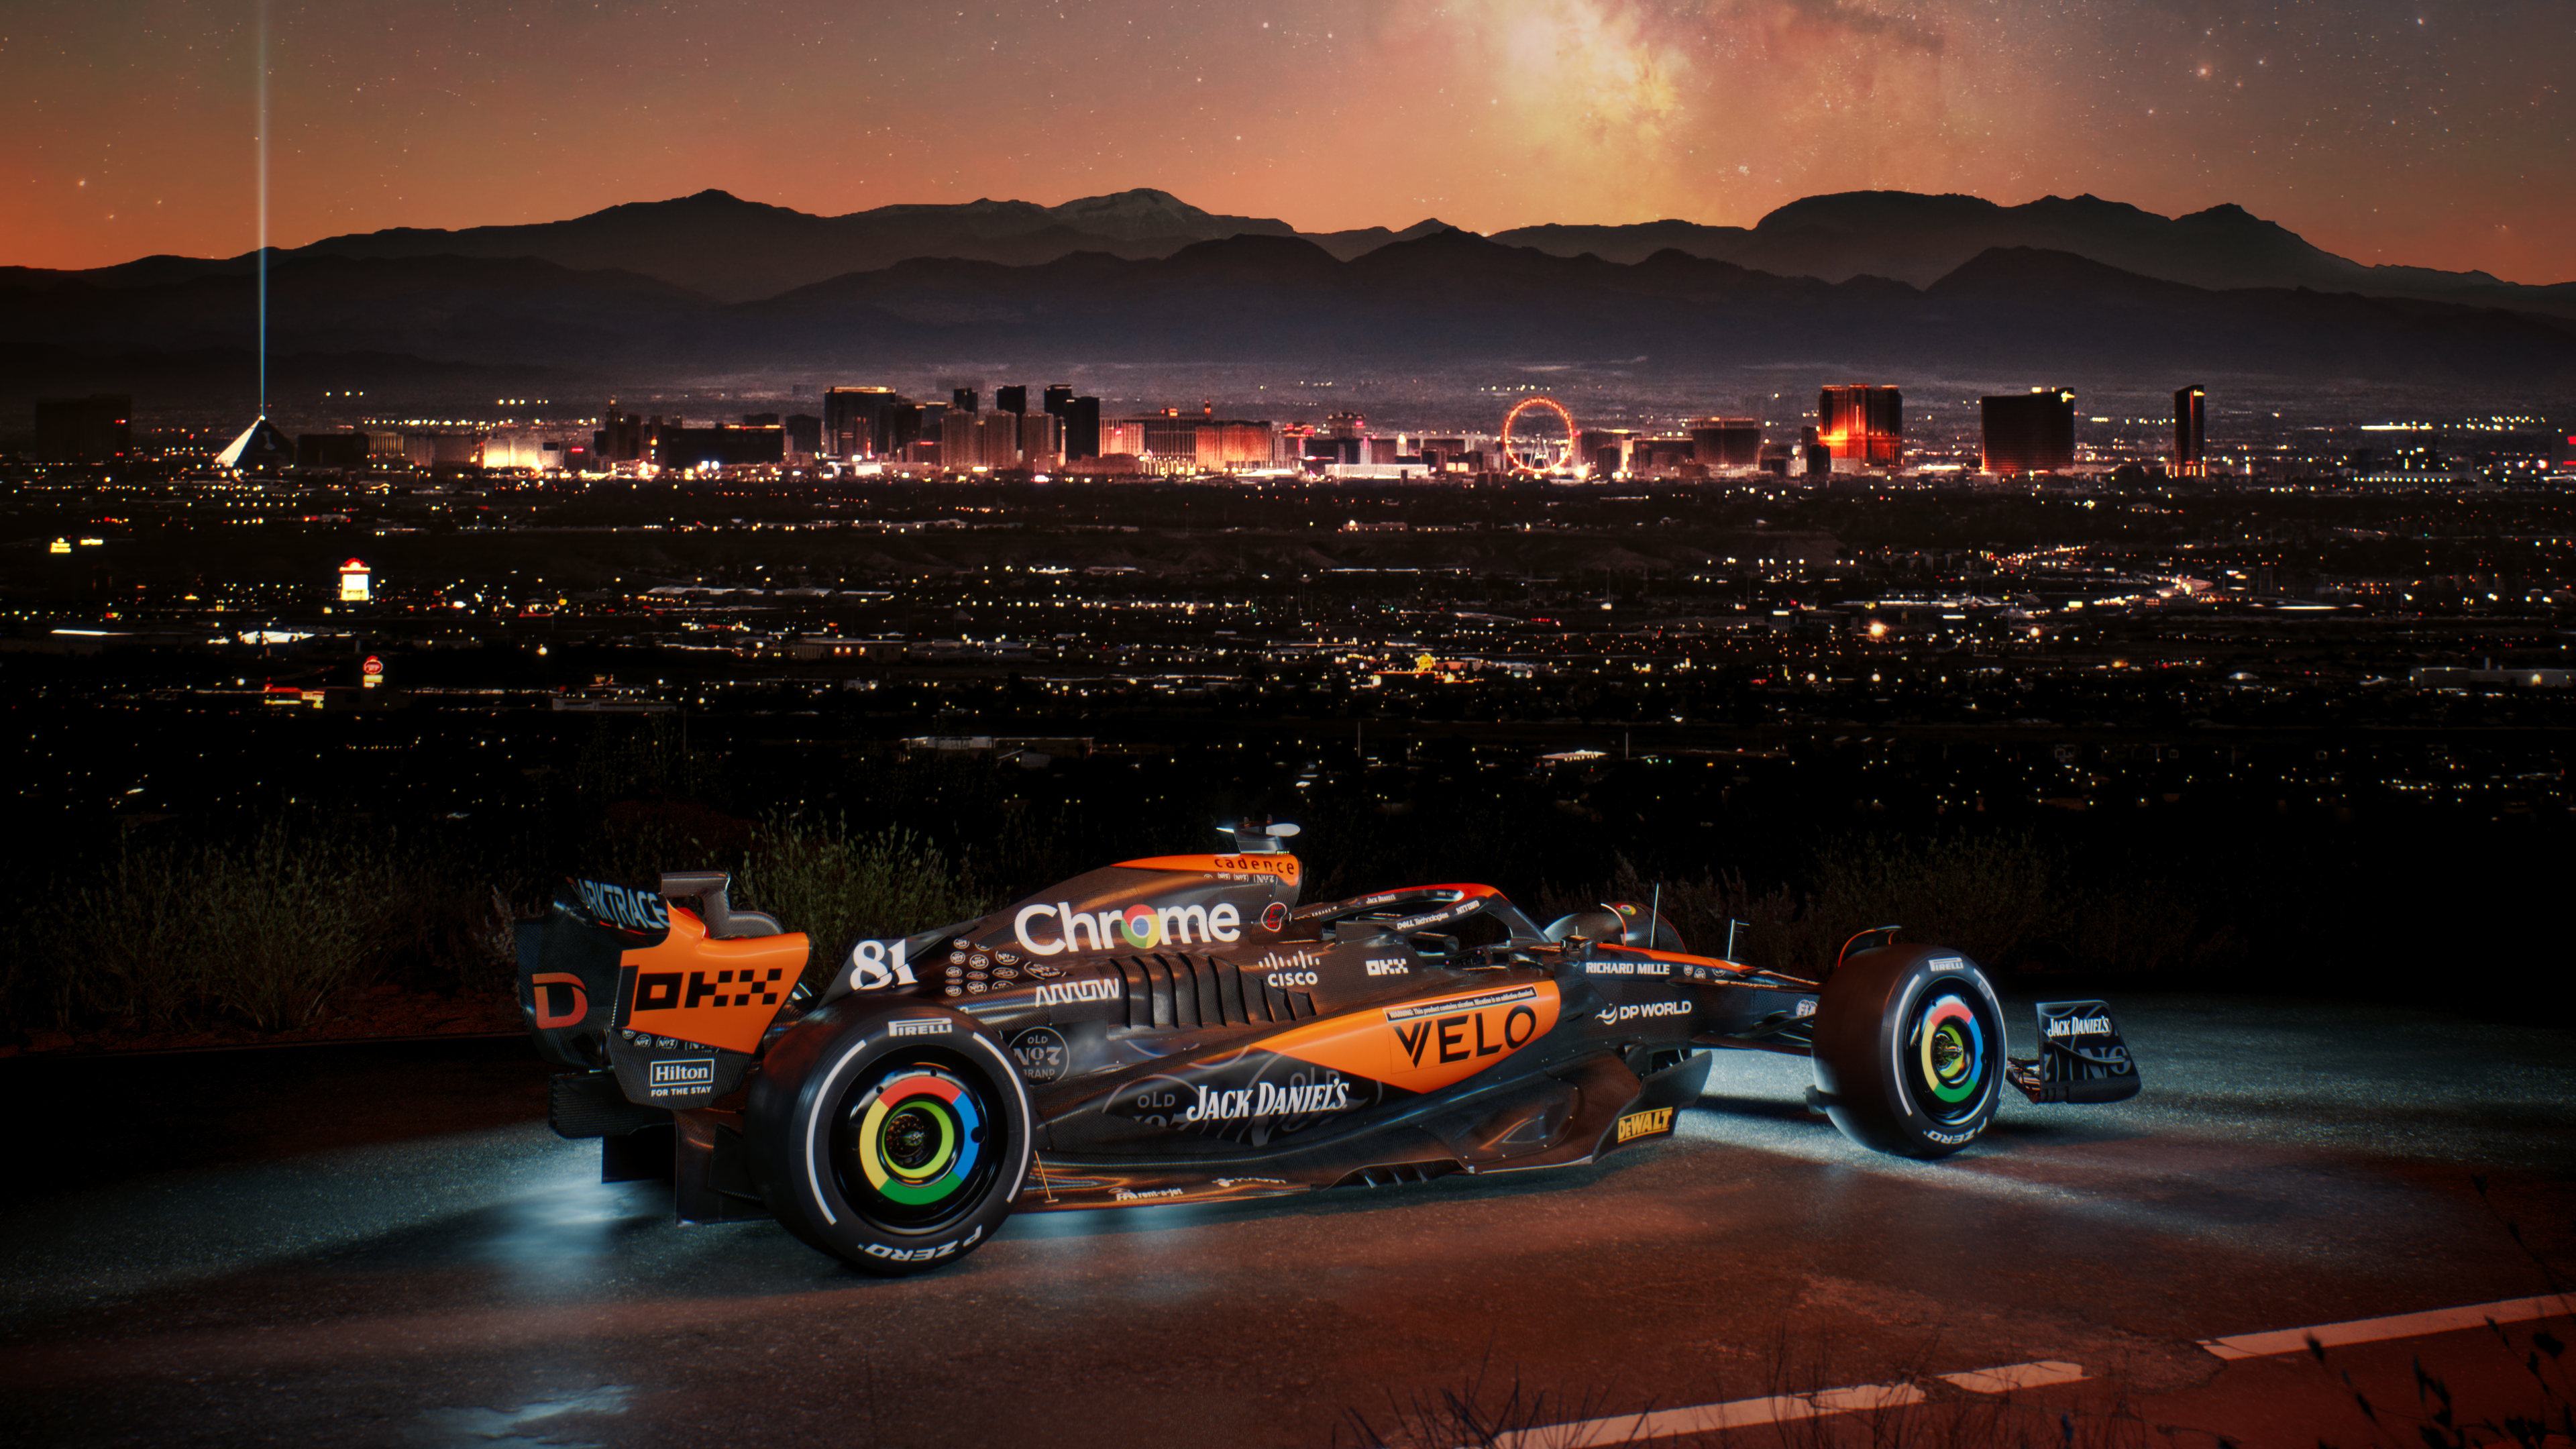 McLaren F1 Unveils New Jack Daniel’s Livery for Las Vegas